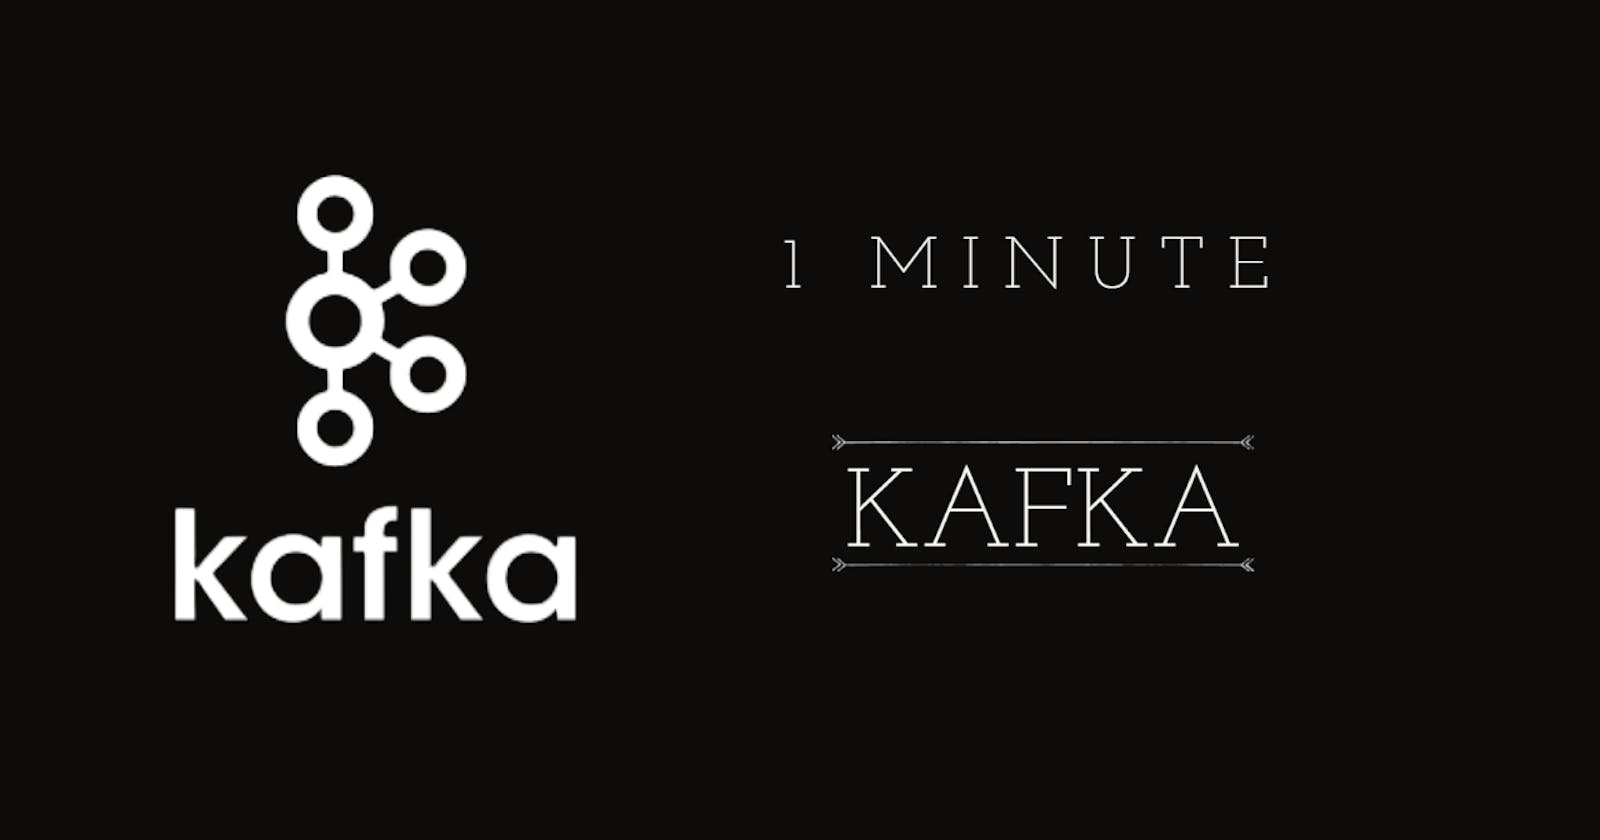 In One Minute : Apache Kafka